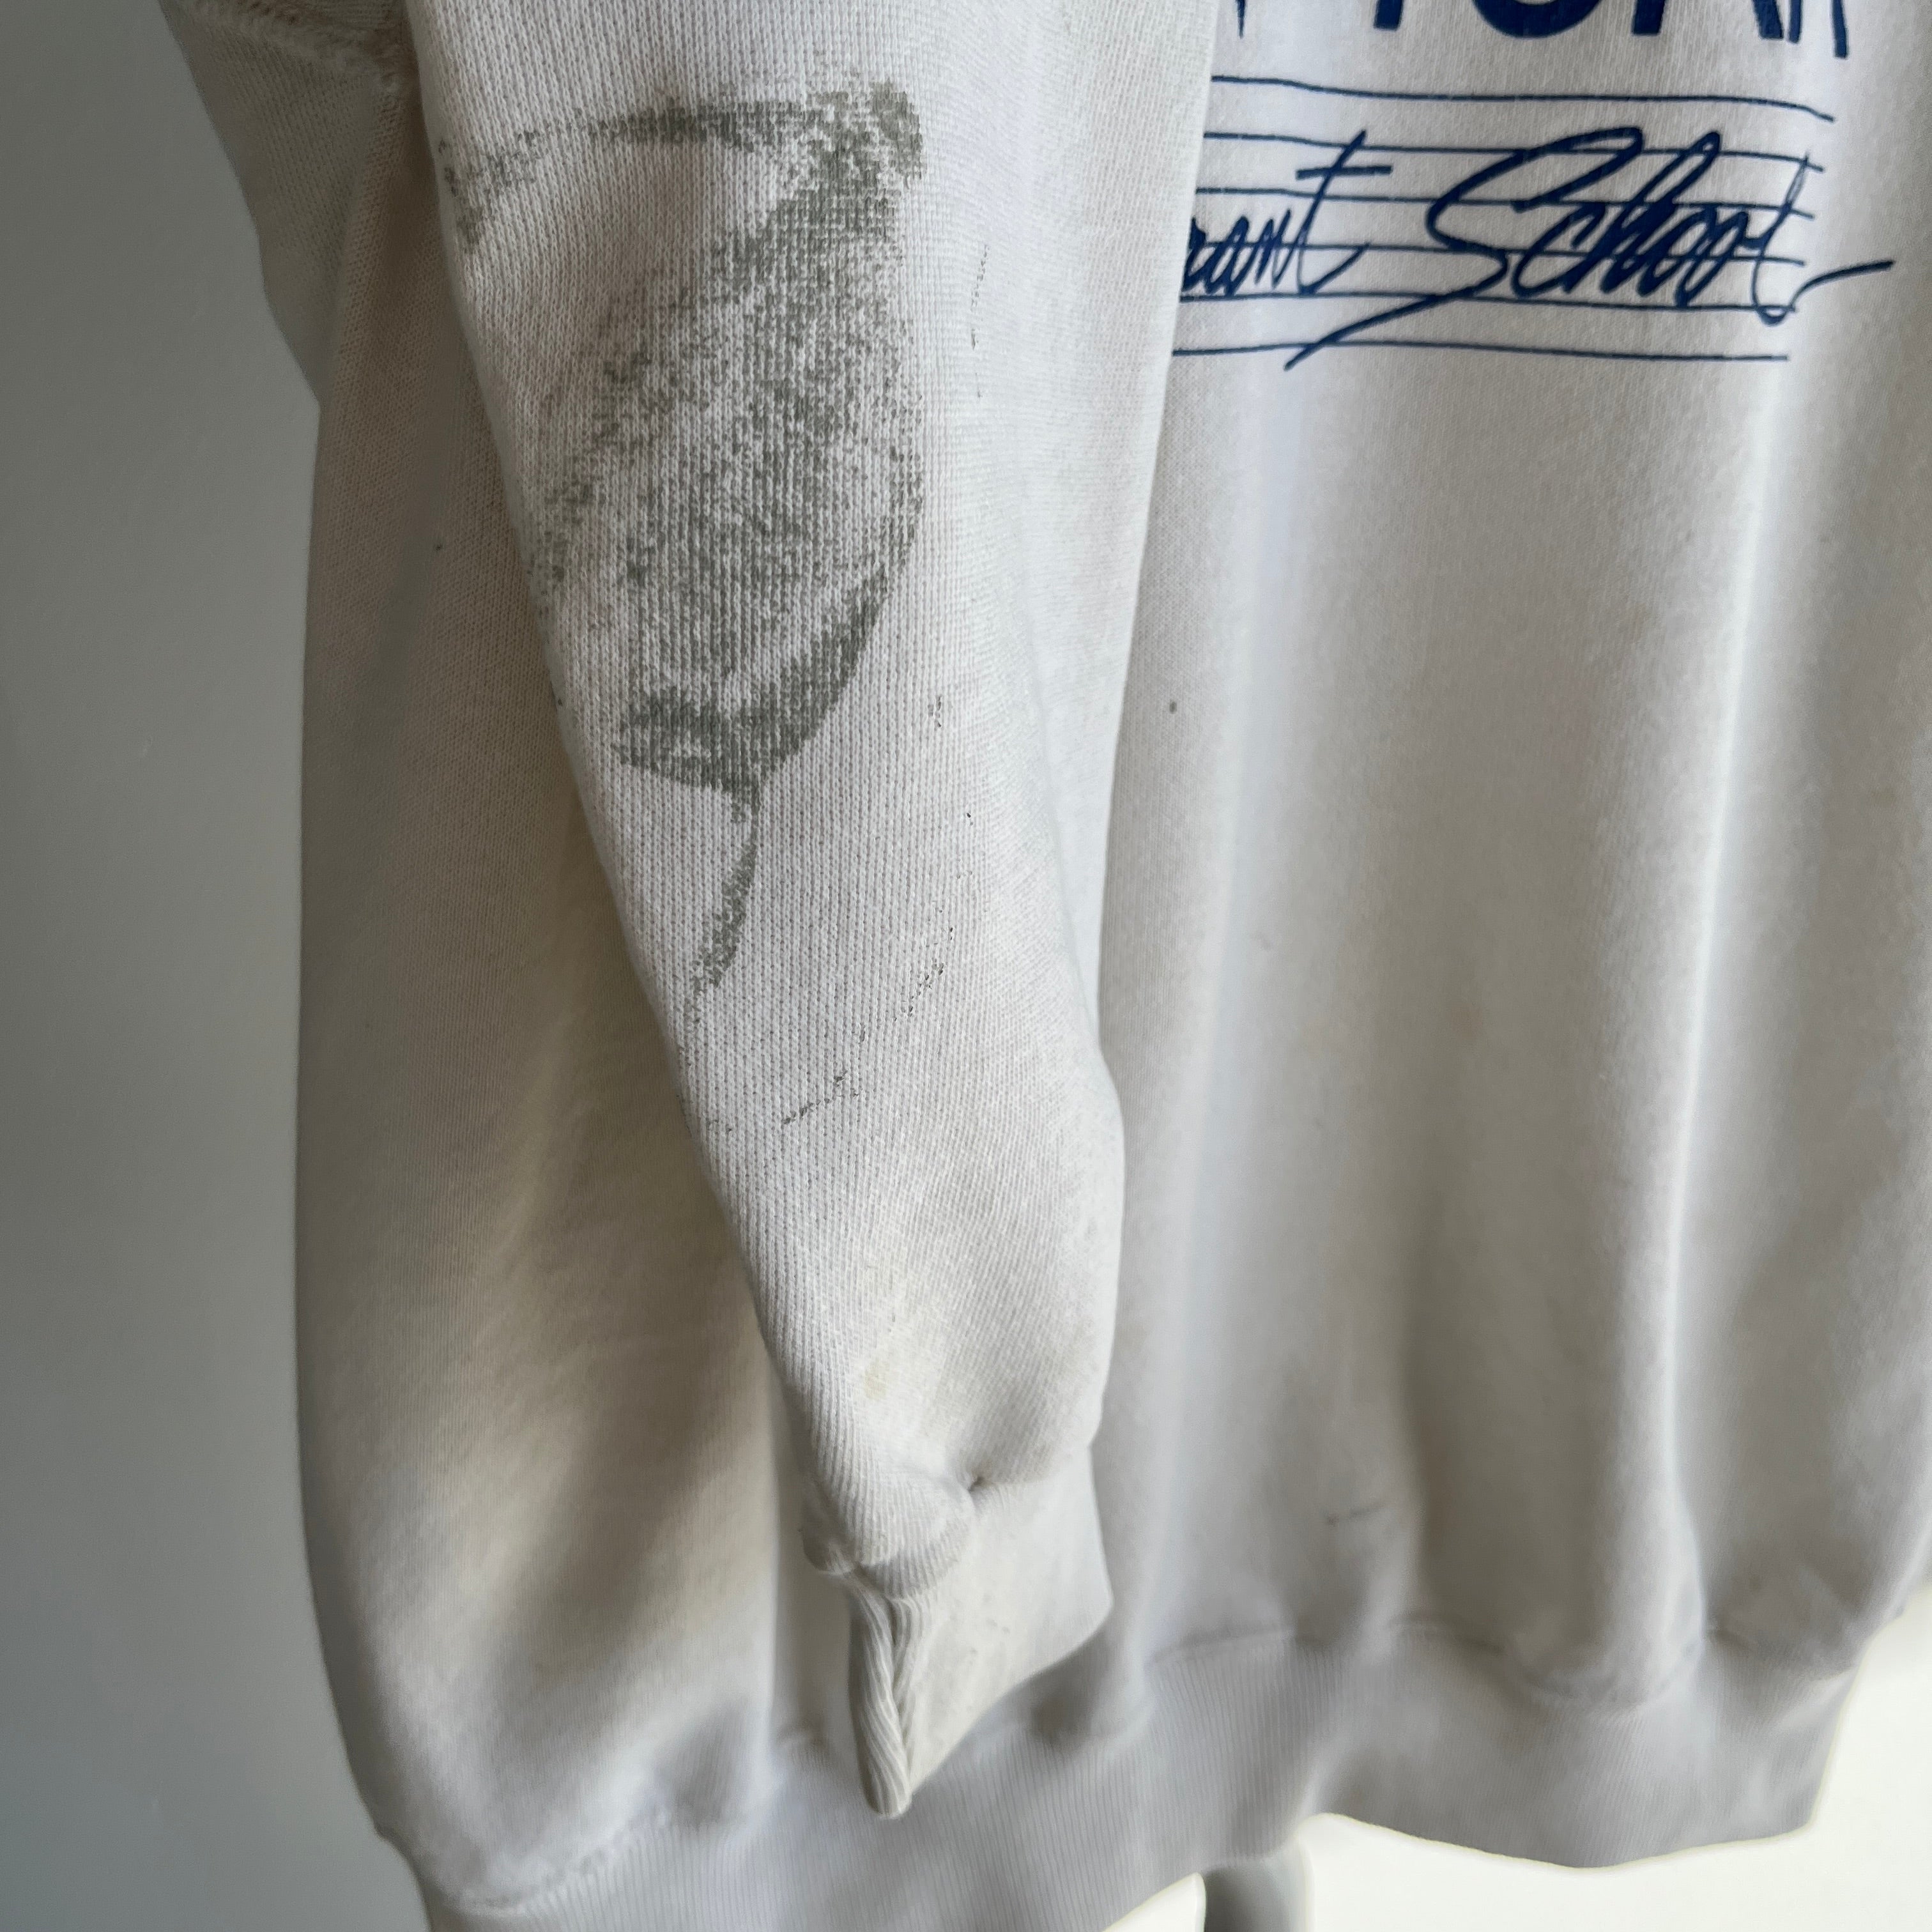 1980s New York Restaurant School Worn Out Sweatshirt